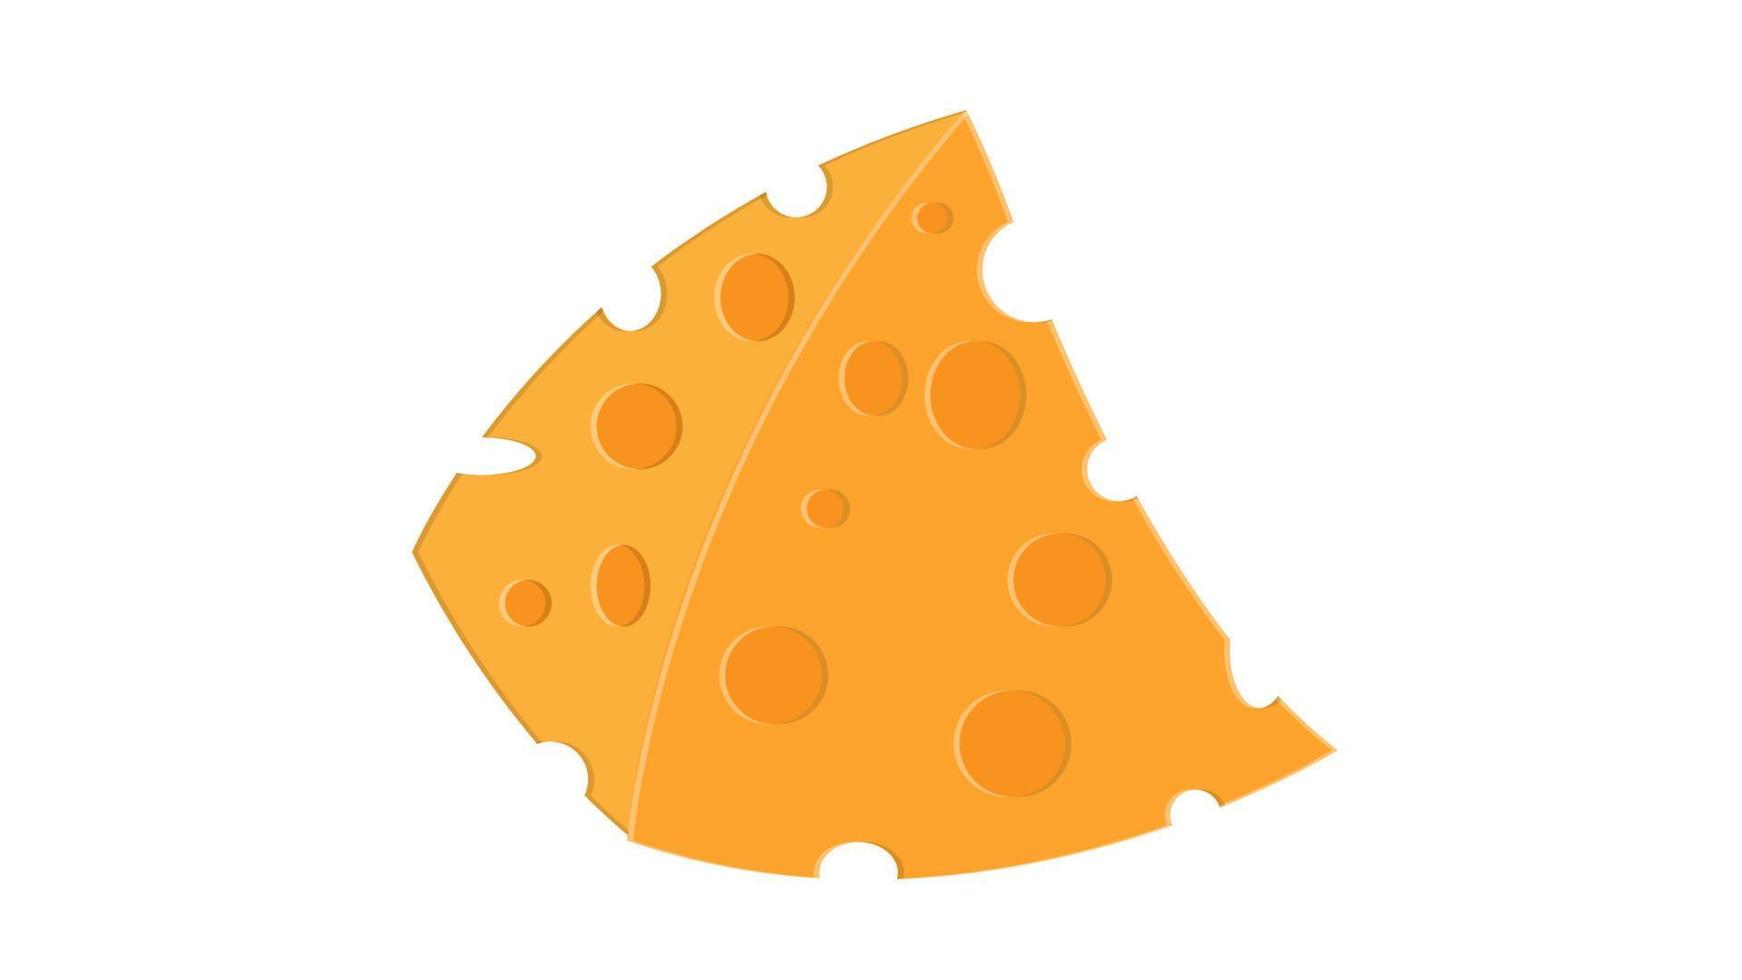 fromage sur fond blanc, illustration vectorielle. une tranche de fromage triangulaire appétissante avec des trous. fromage français à l'arôme délicat. Fromage Frais vecteur